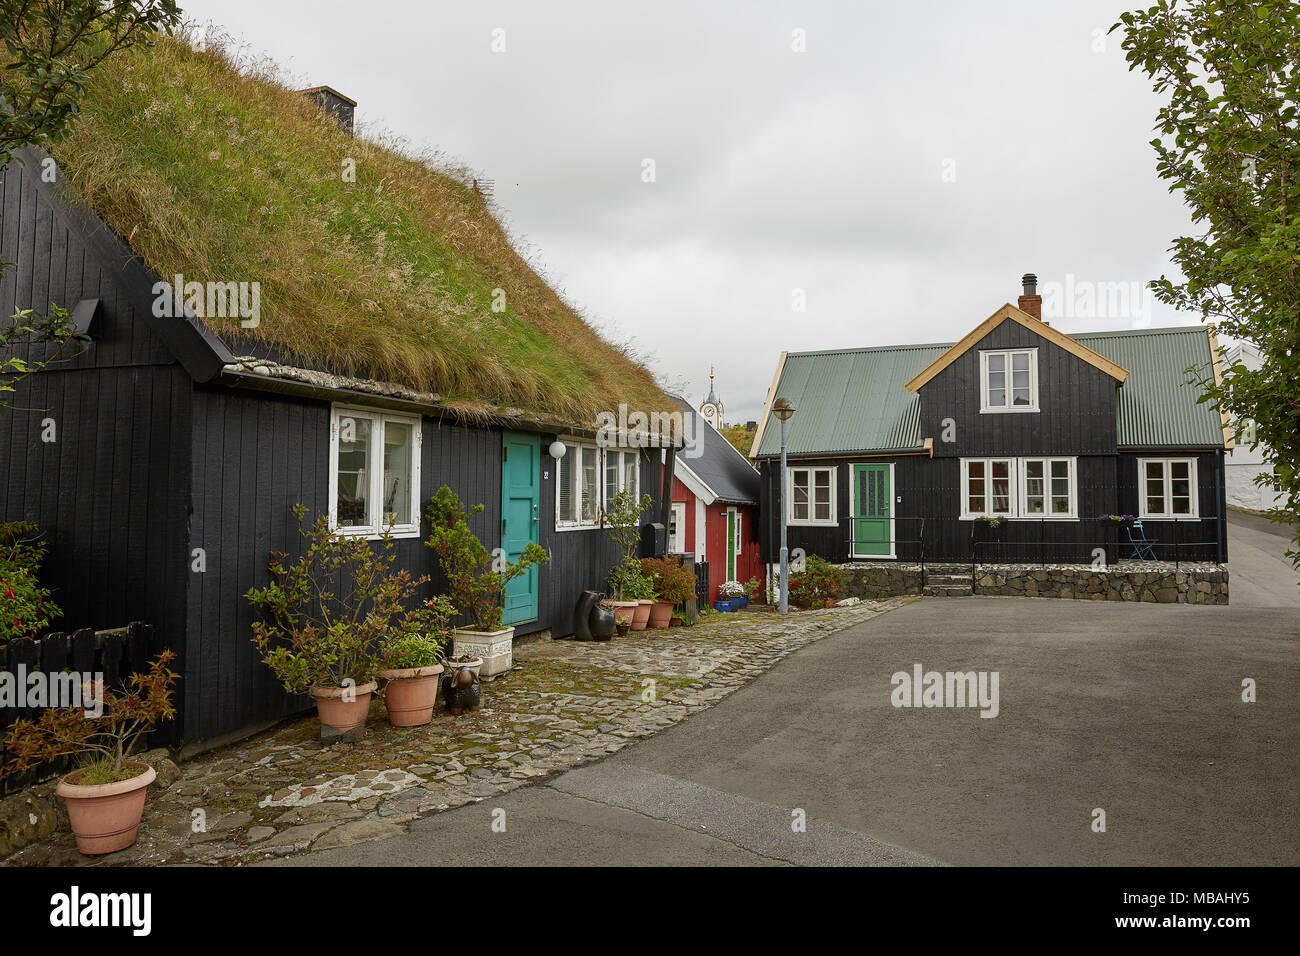 TORSHAWN, FÄRÖER, Dänemark - 21 August 2018: Typische Häuser mit dem grasdach in Färöer Inseln, Dänemark. Stockfoto